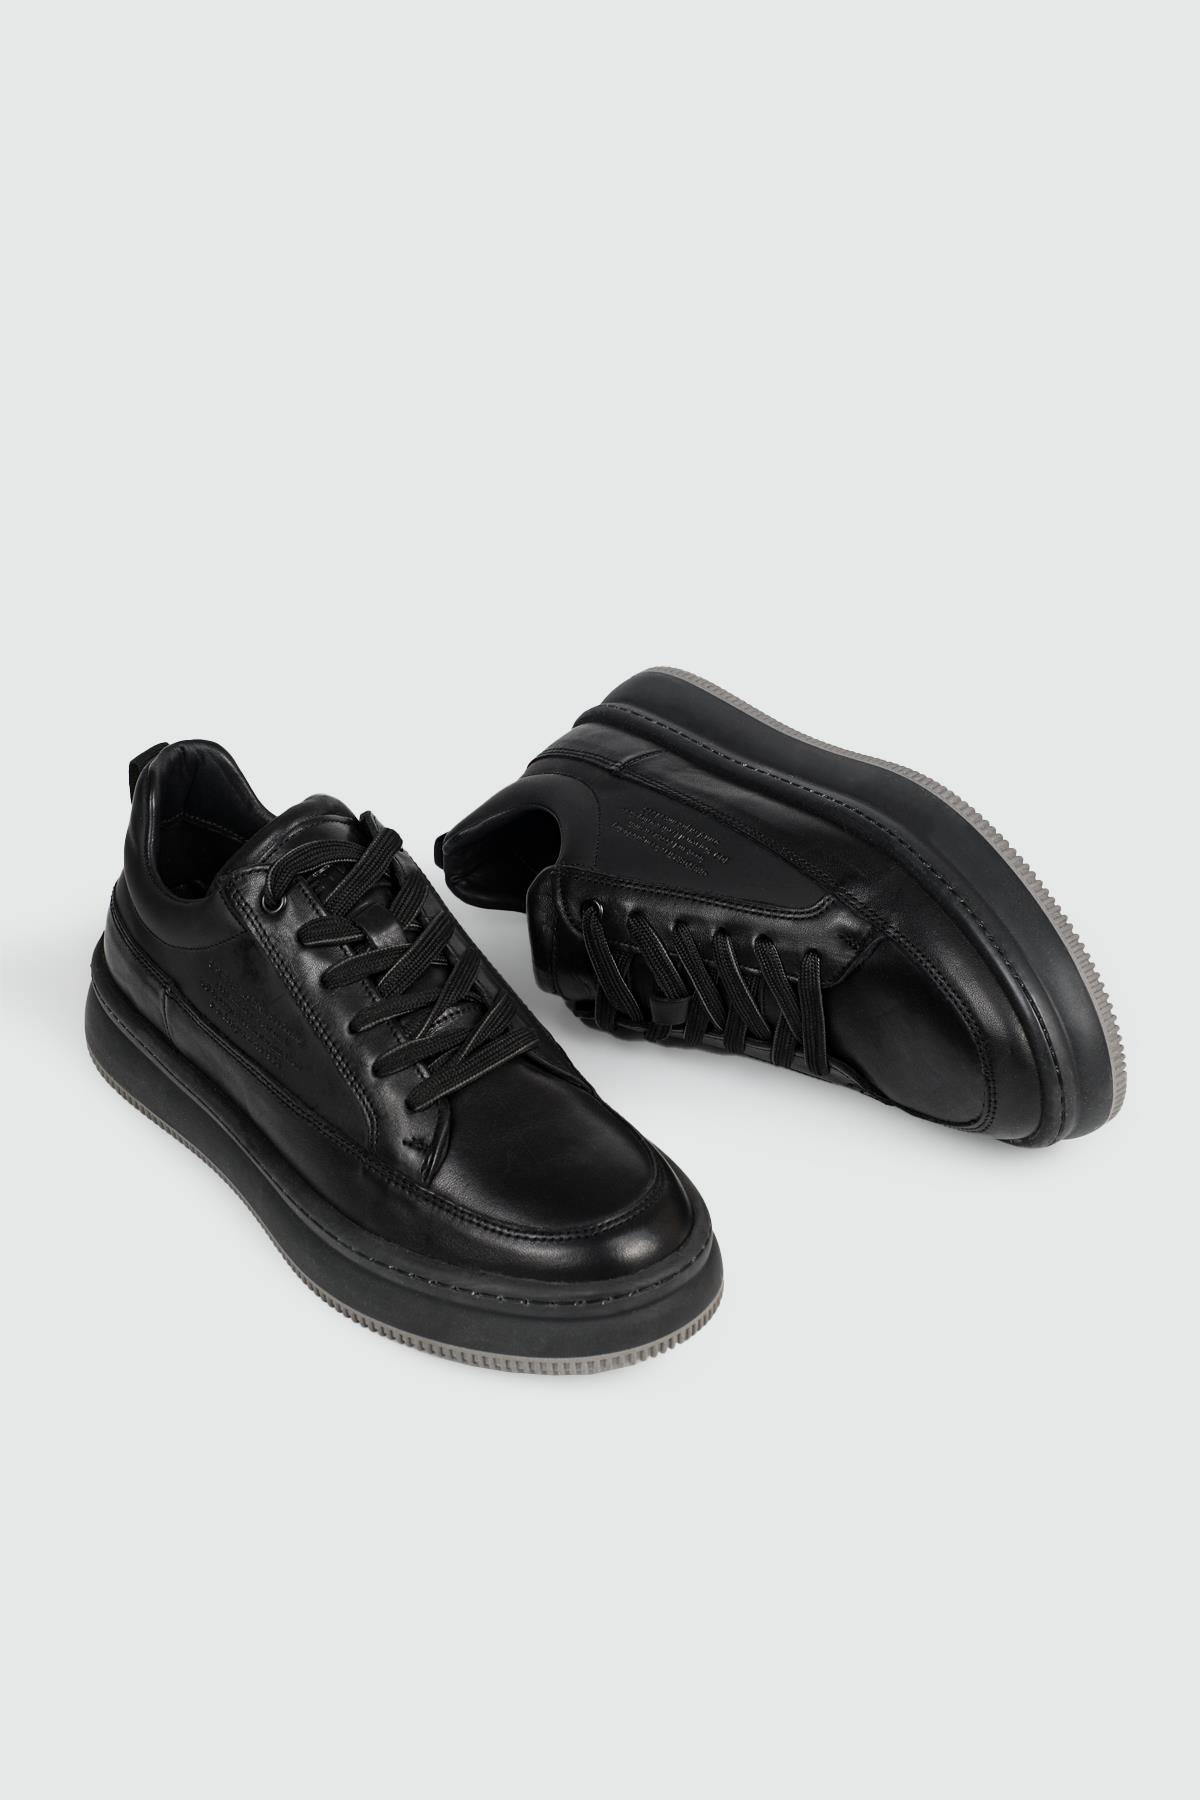 Greyder Deri Spor Siyah Erkek Ayakkabı 16380 | Ayakkabı City